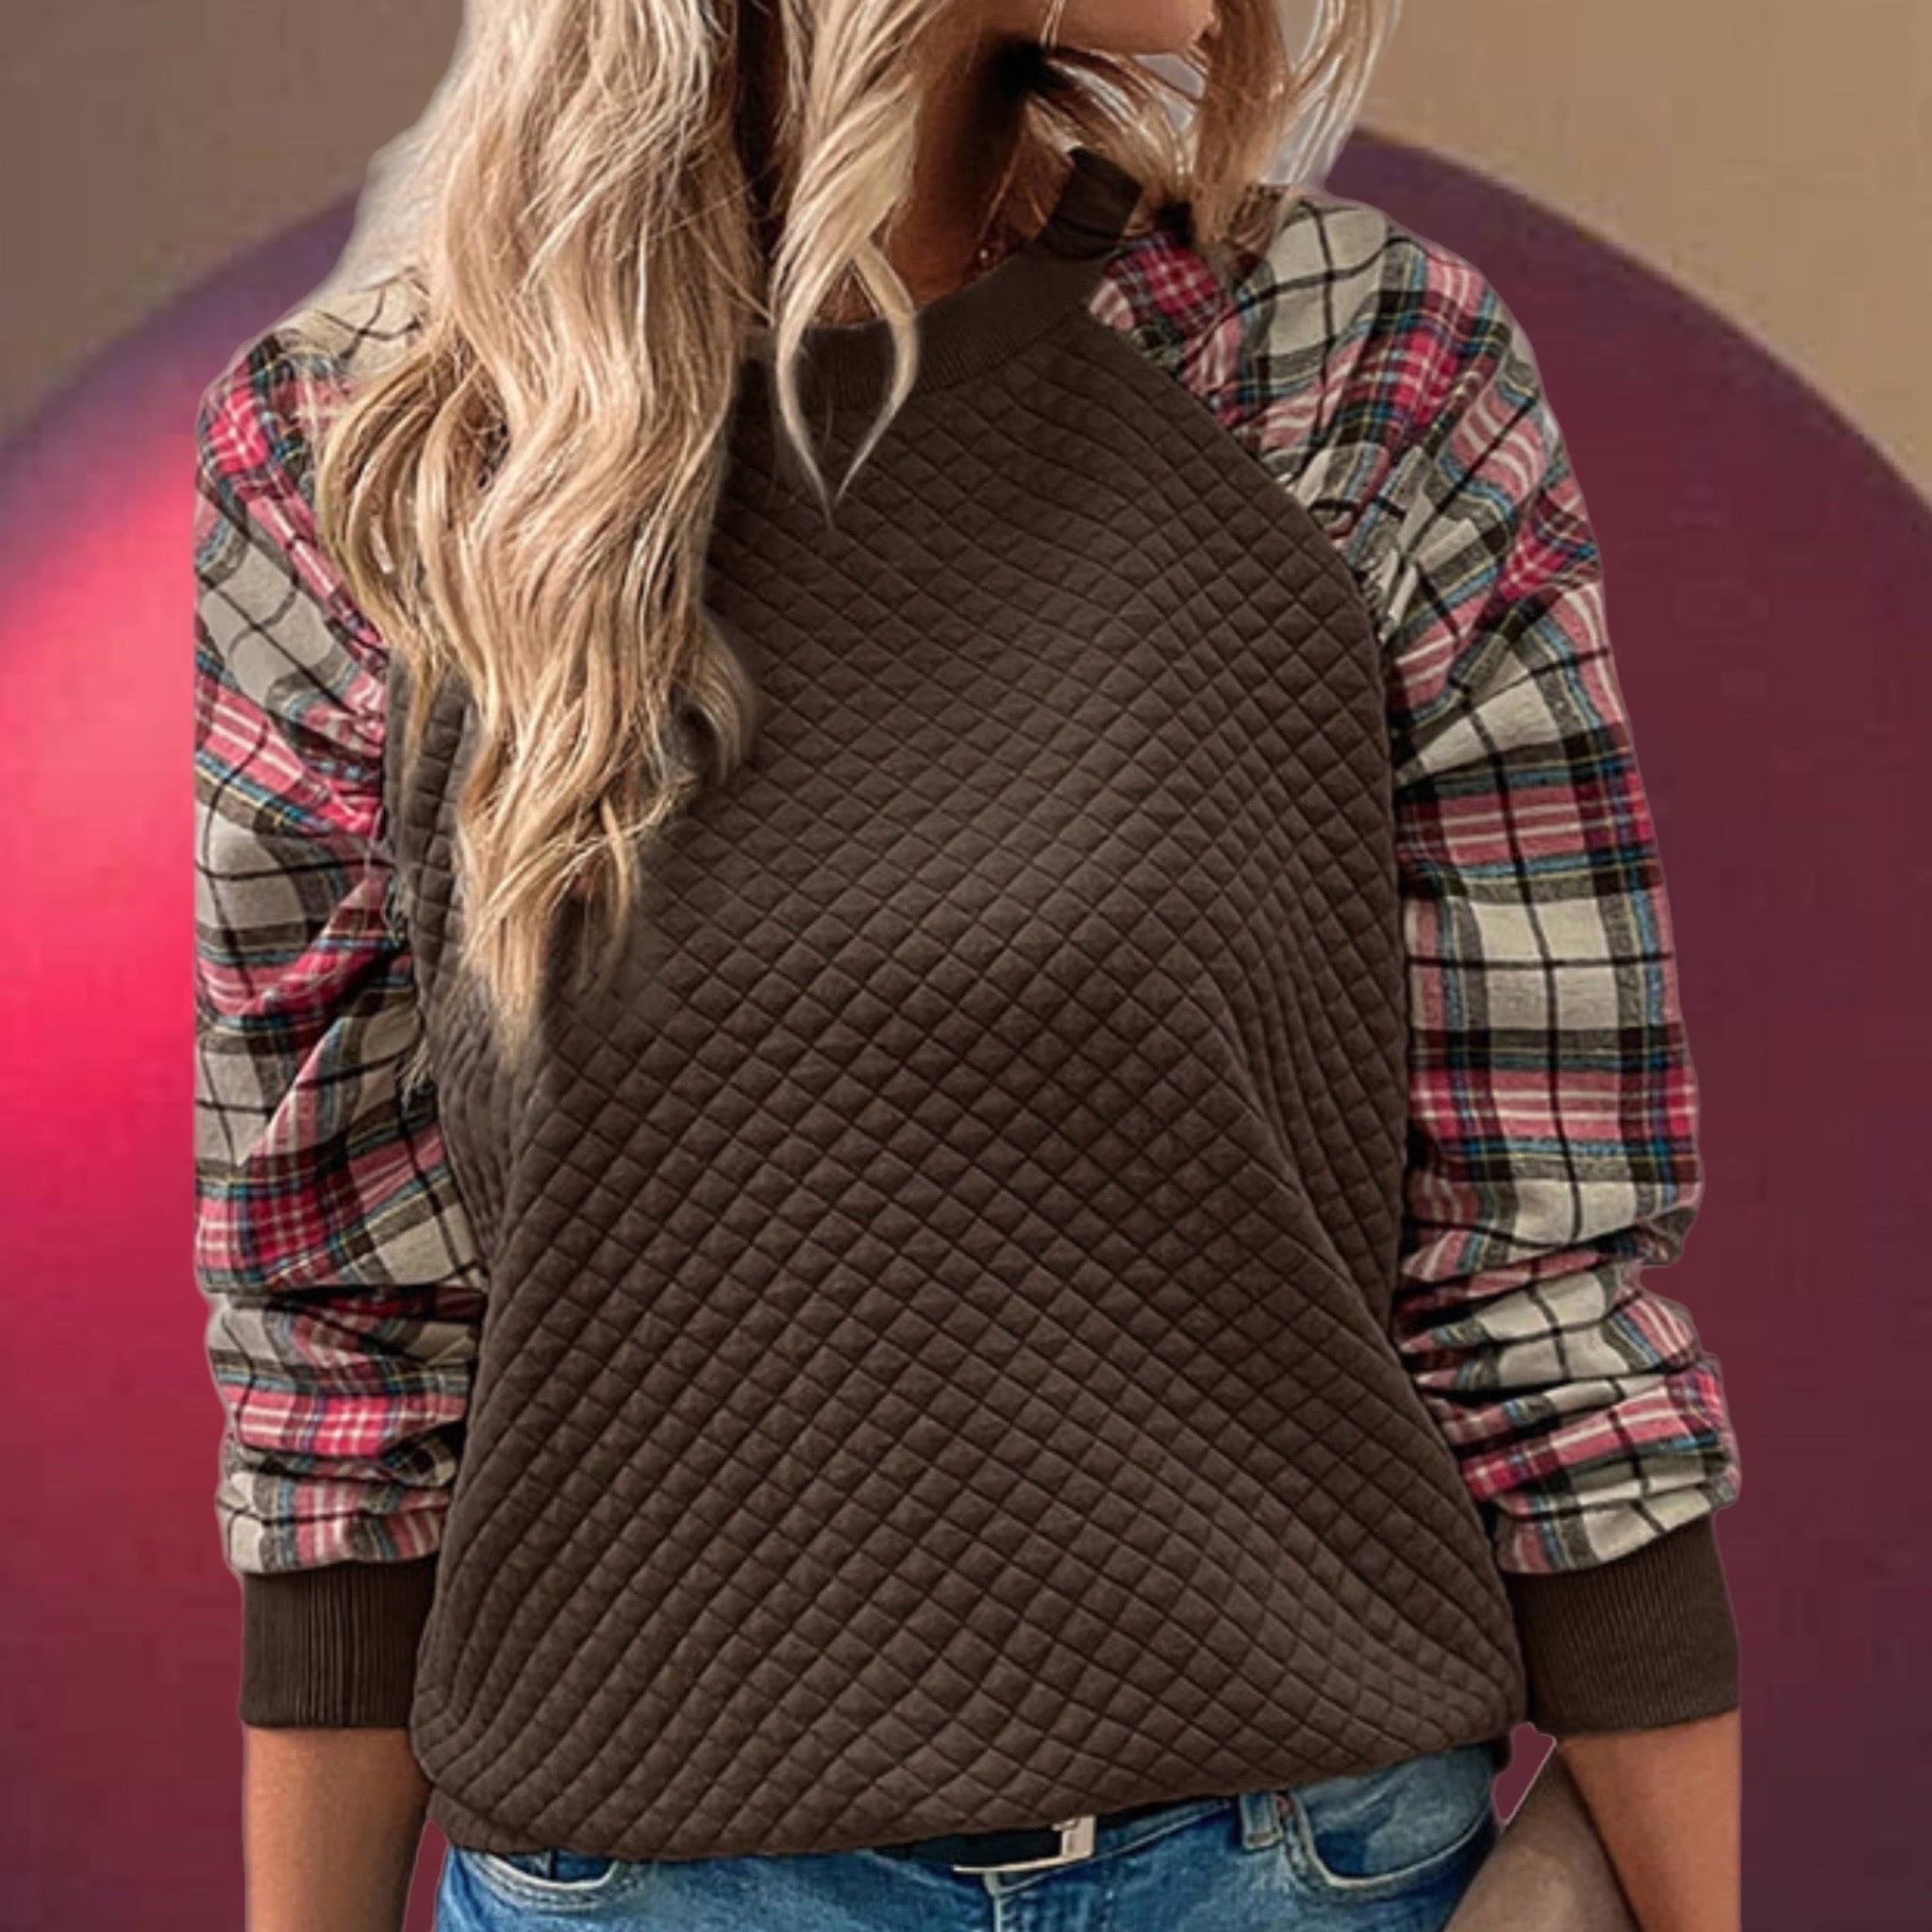 Dark Brown Quilted Crewneck Sweatshirt with Plaid Raglan Sleeves